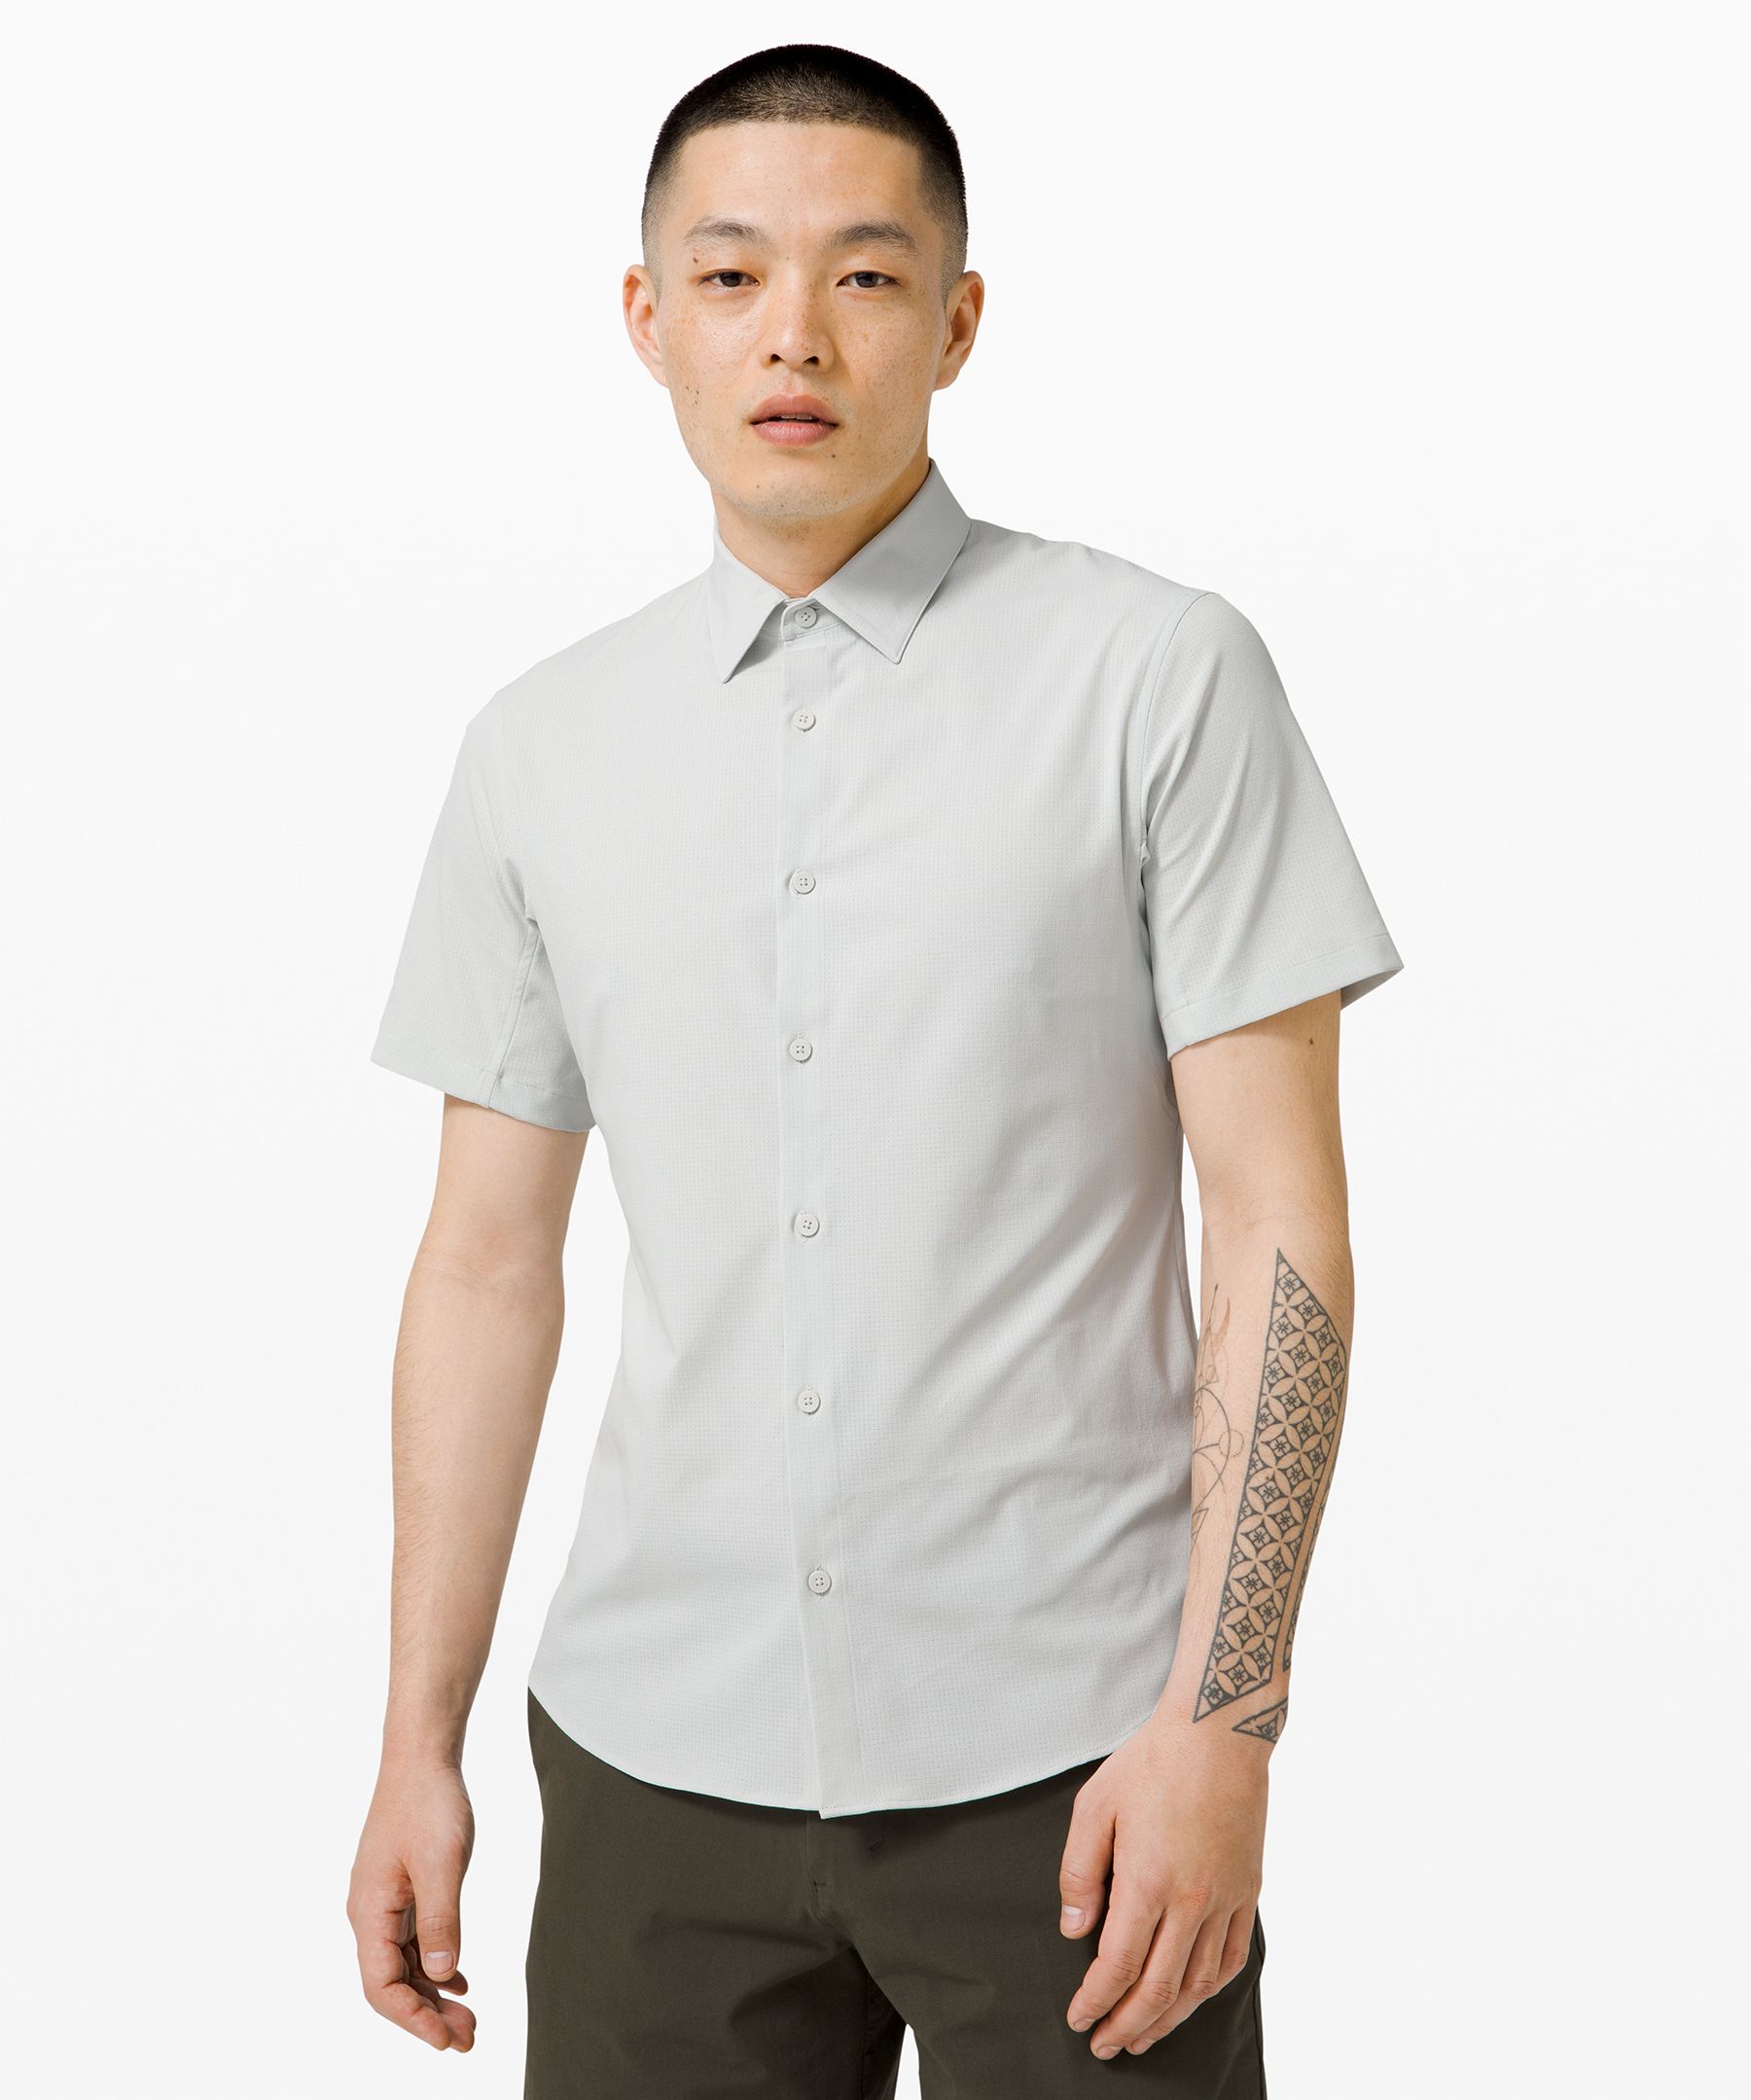 lululemon mens button down shirt